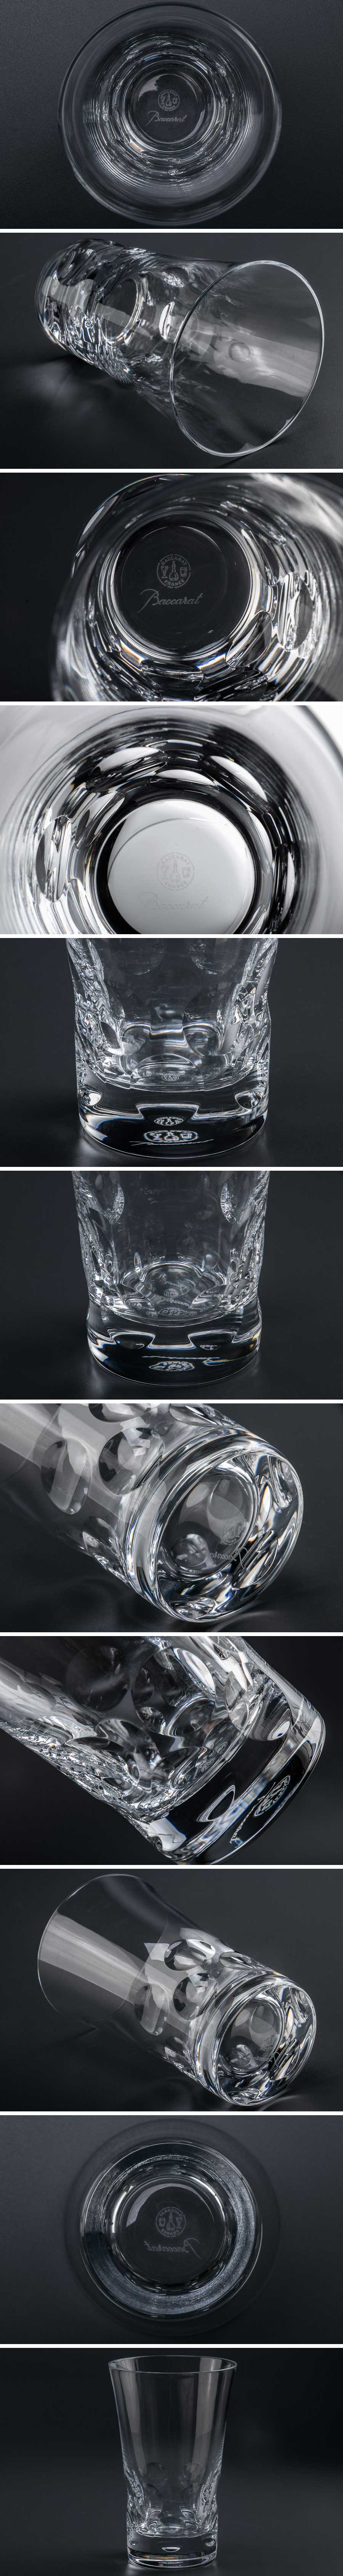 【品質保証SALE】『 Baccarat バカラ ベルーガ ハイボールグラス 7864 』 洋食器 ブランド テーブルウェア クリスタルガラス 工芸ガラス